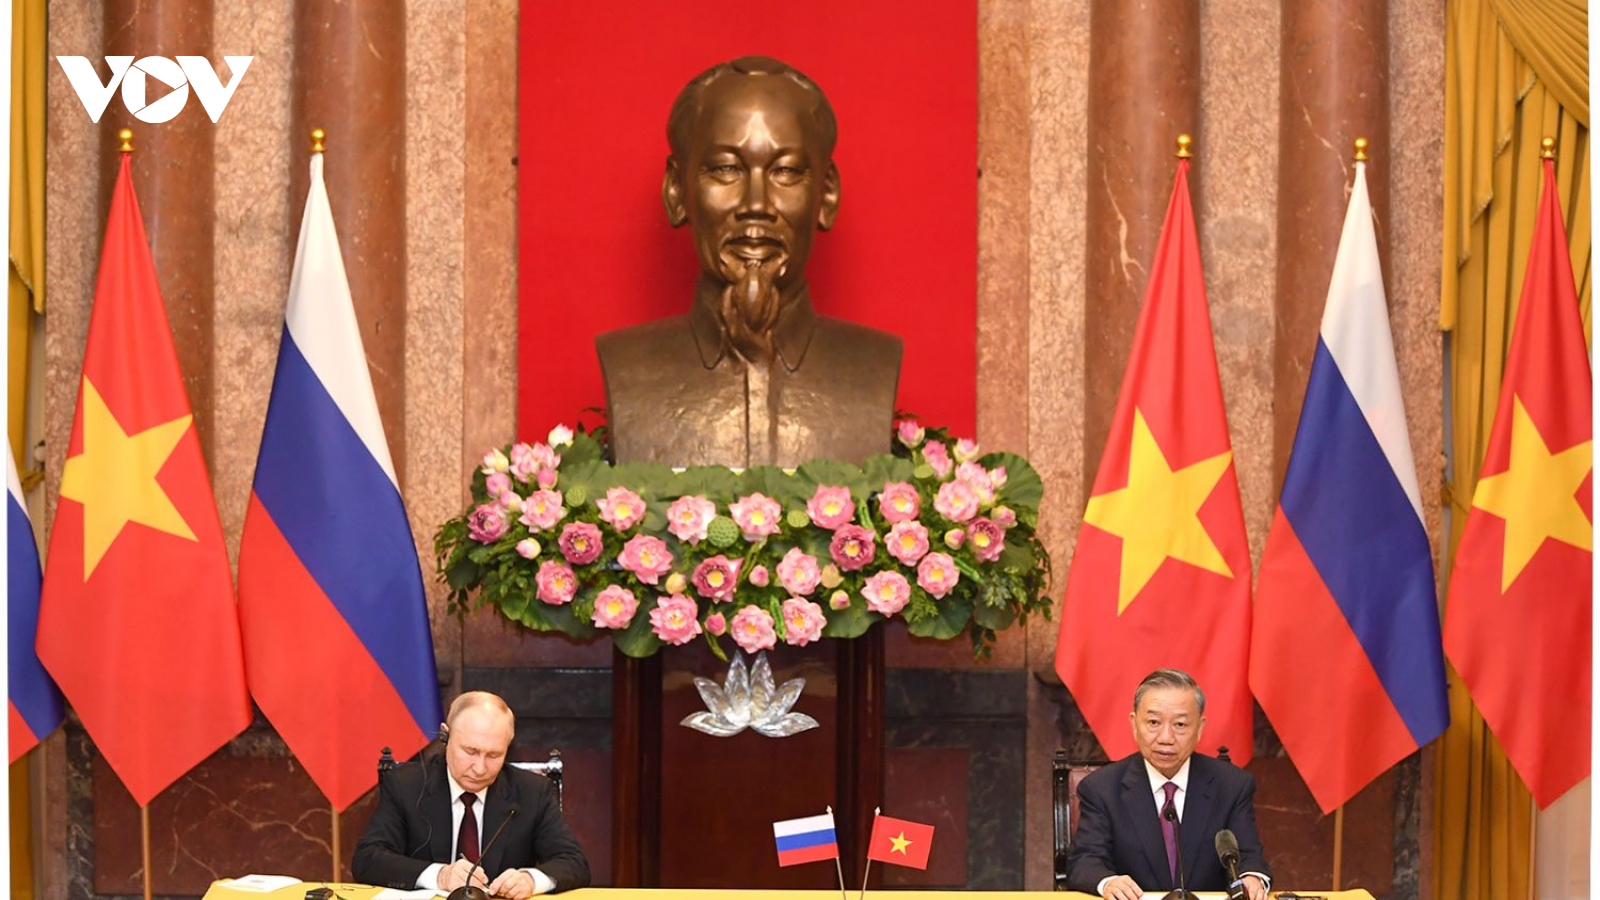 Chủ tịch nước Tô Lâm và Tổng thống Putin thống nhất hàng loạt vấn đề quan trọng